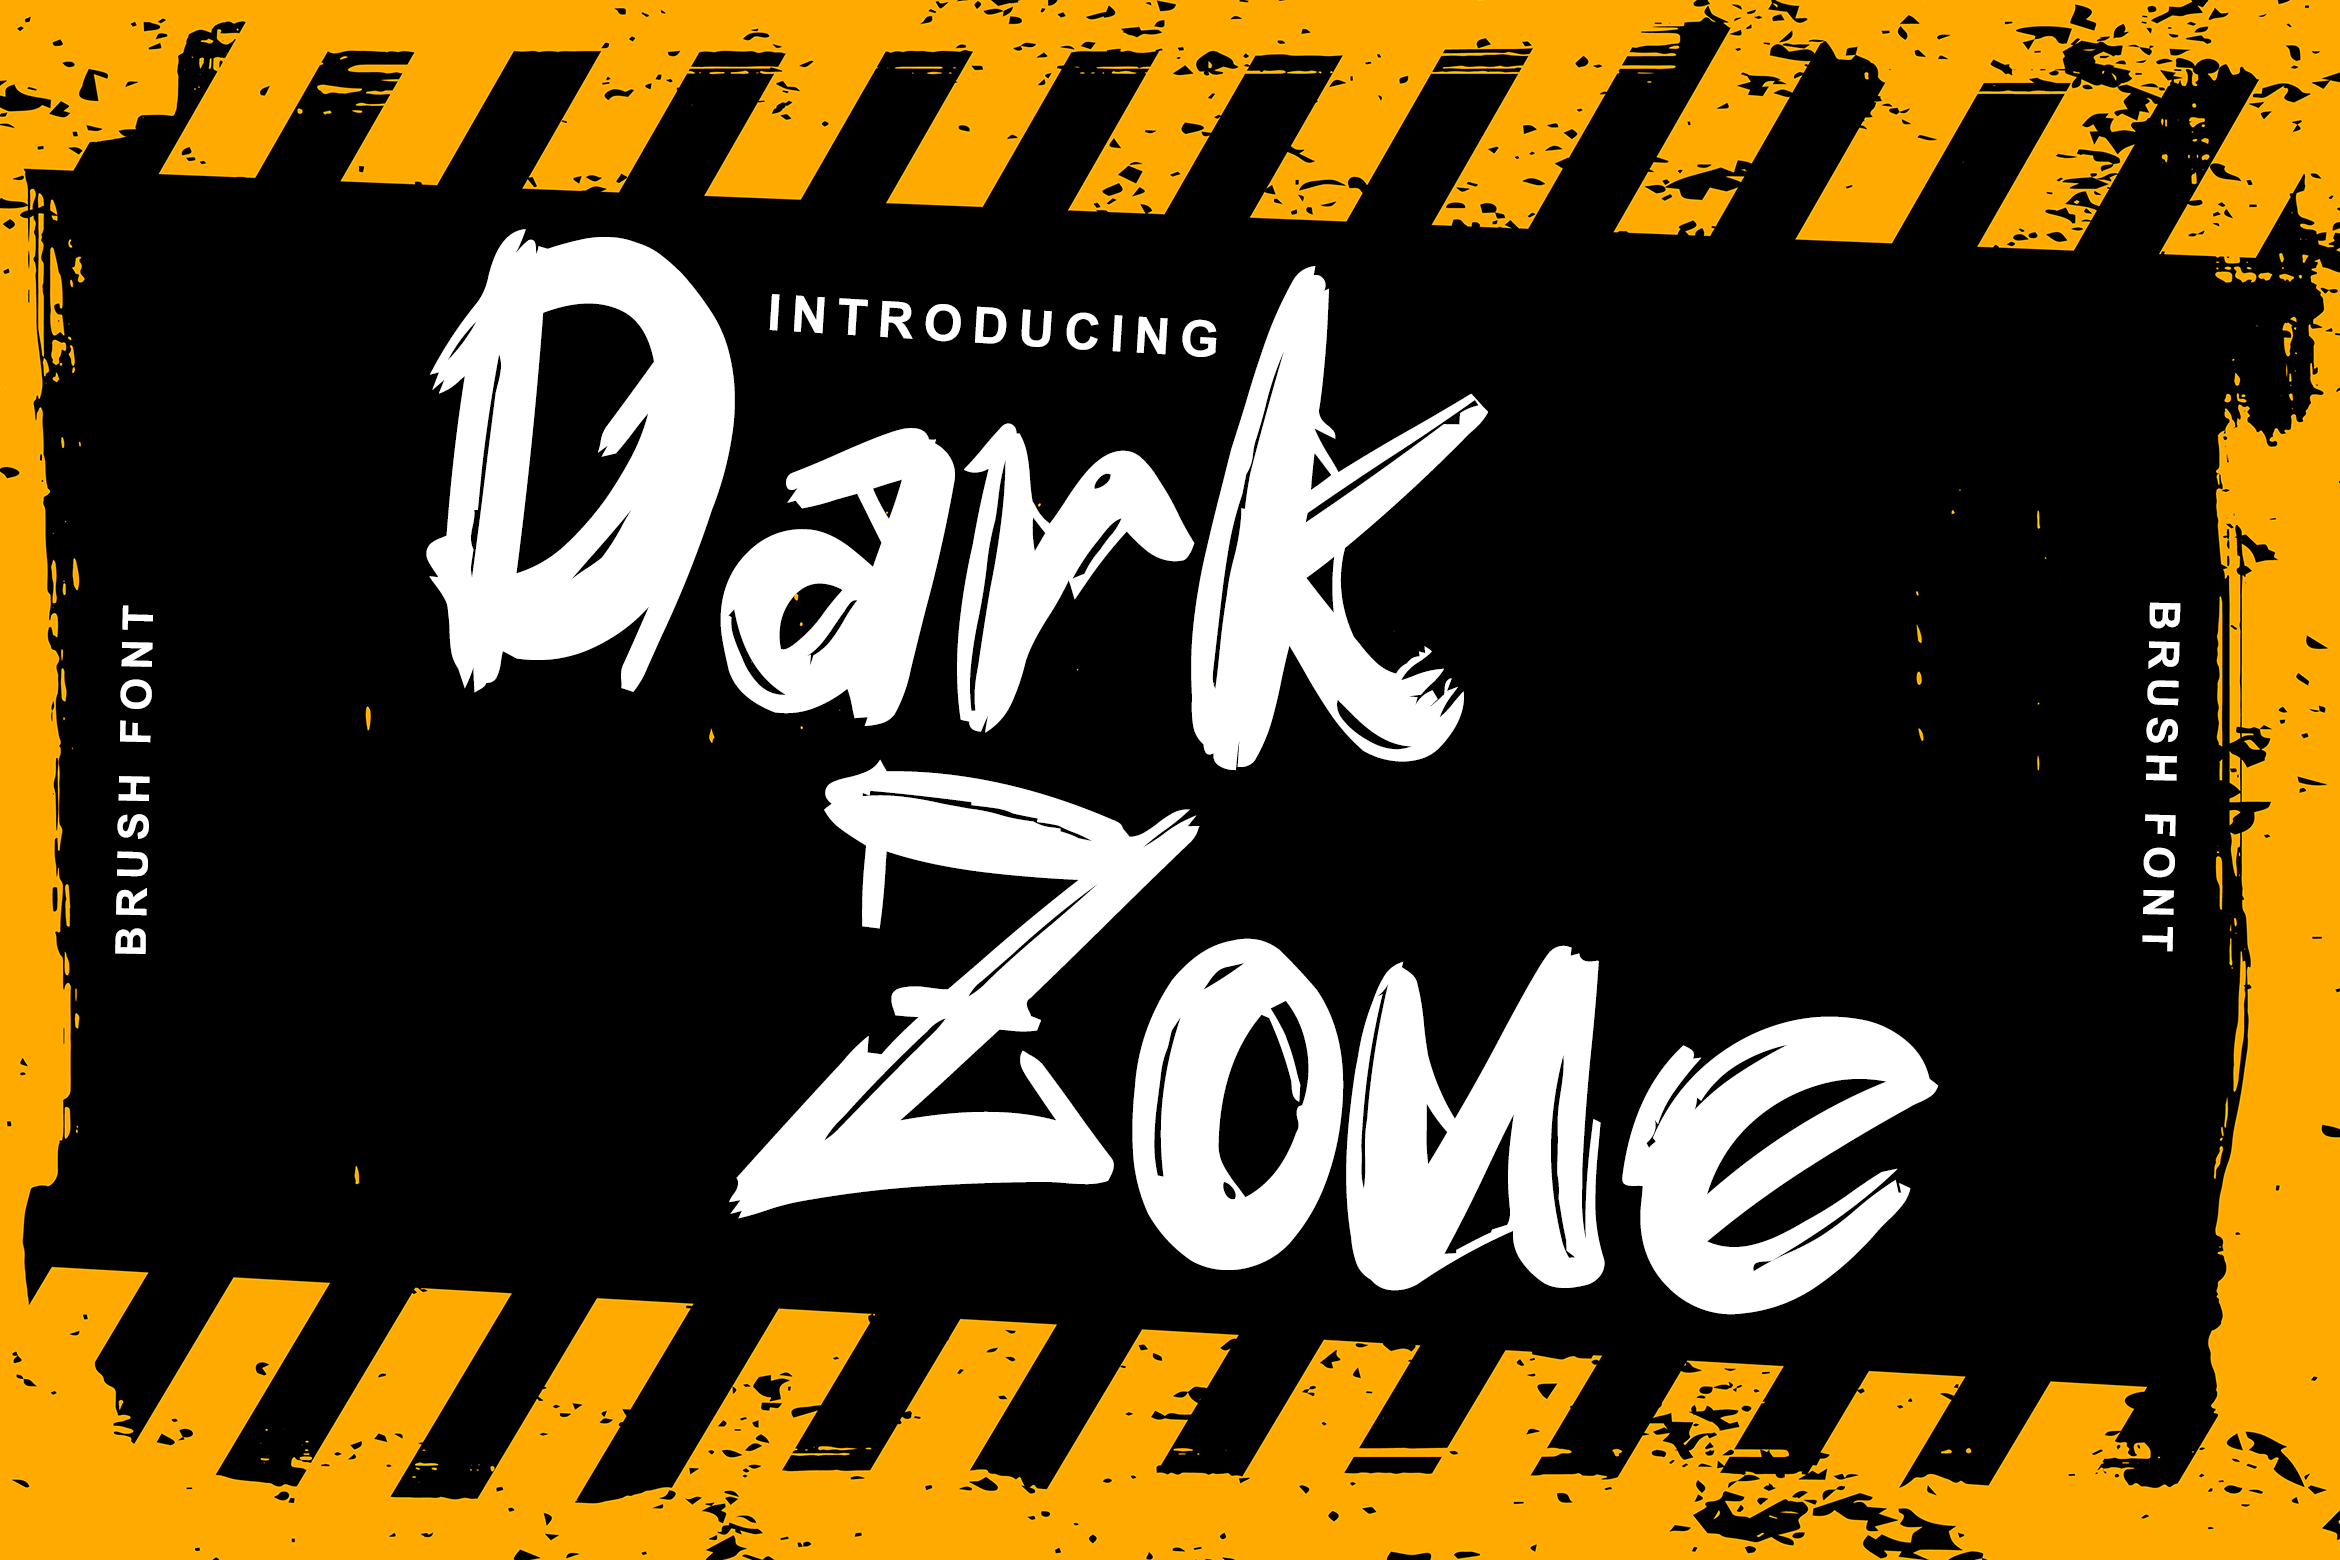 Police Dark Zone